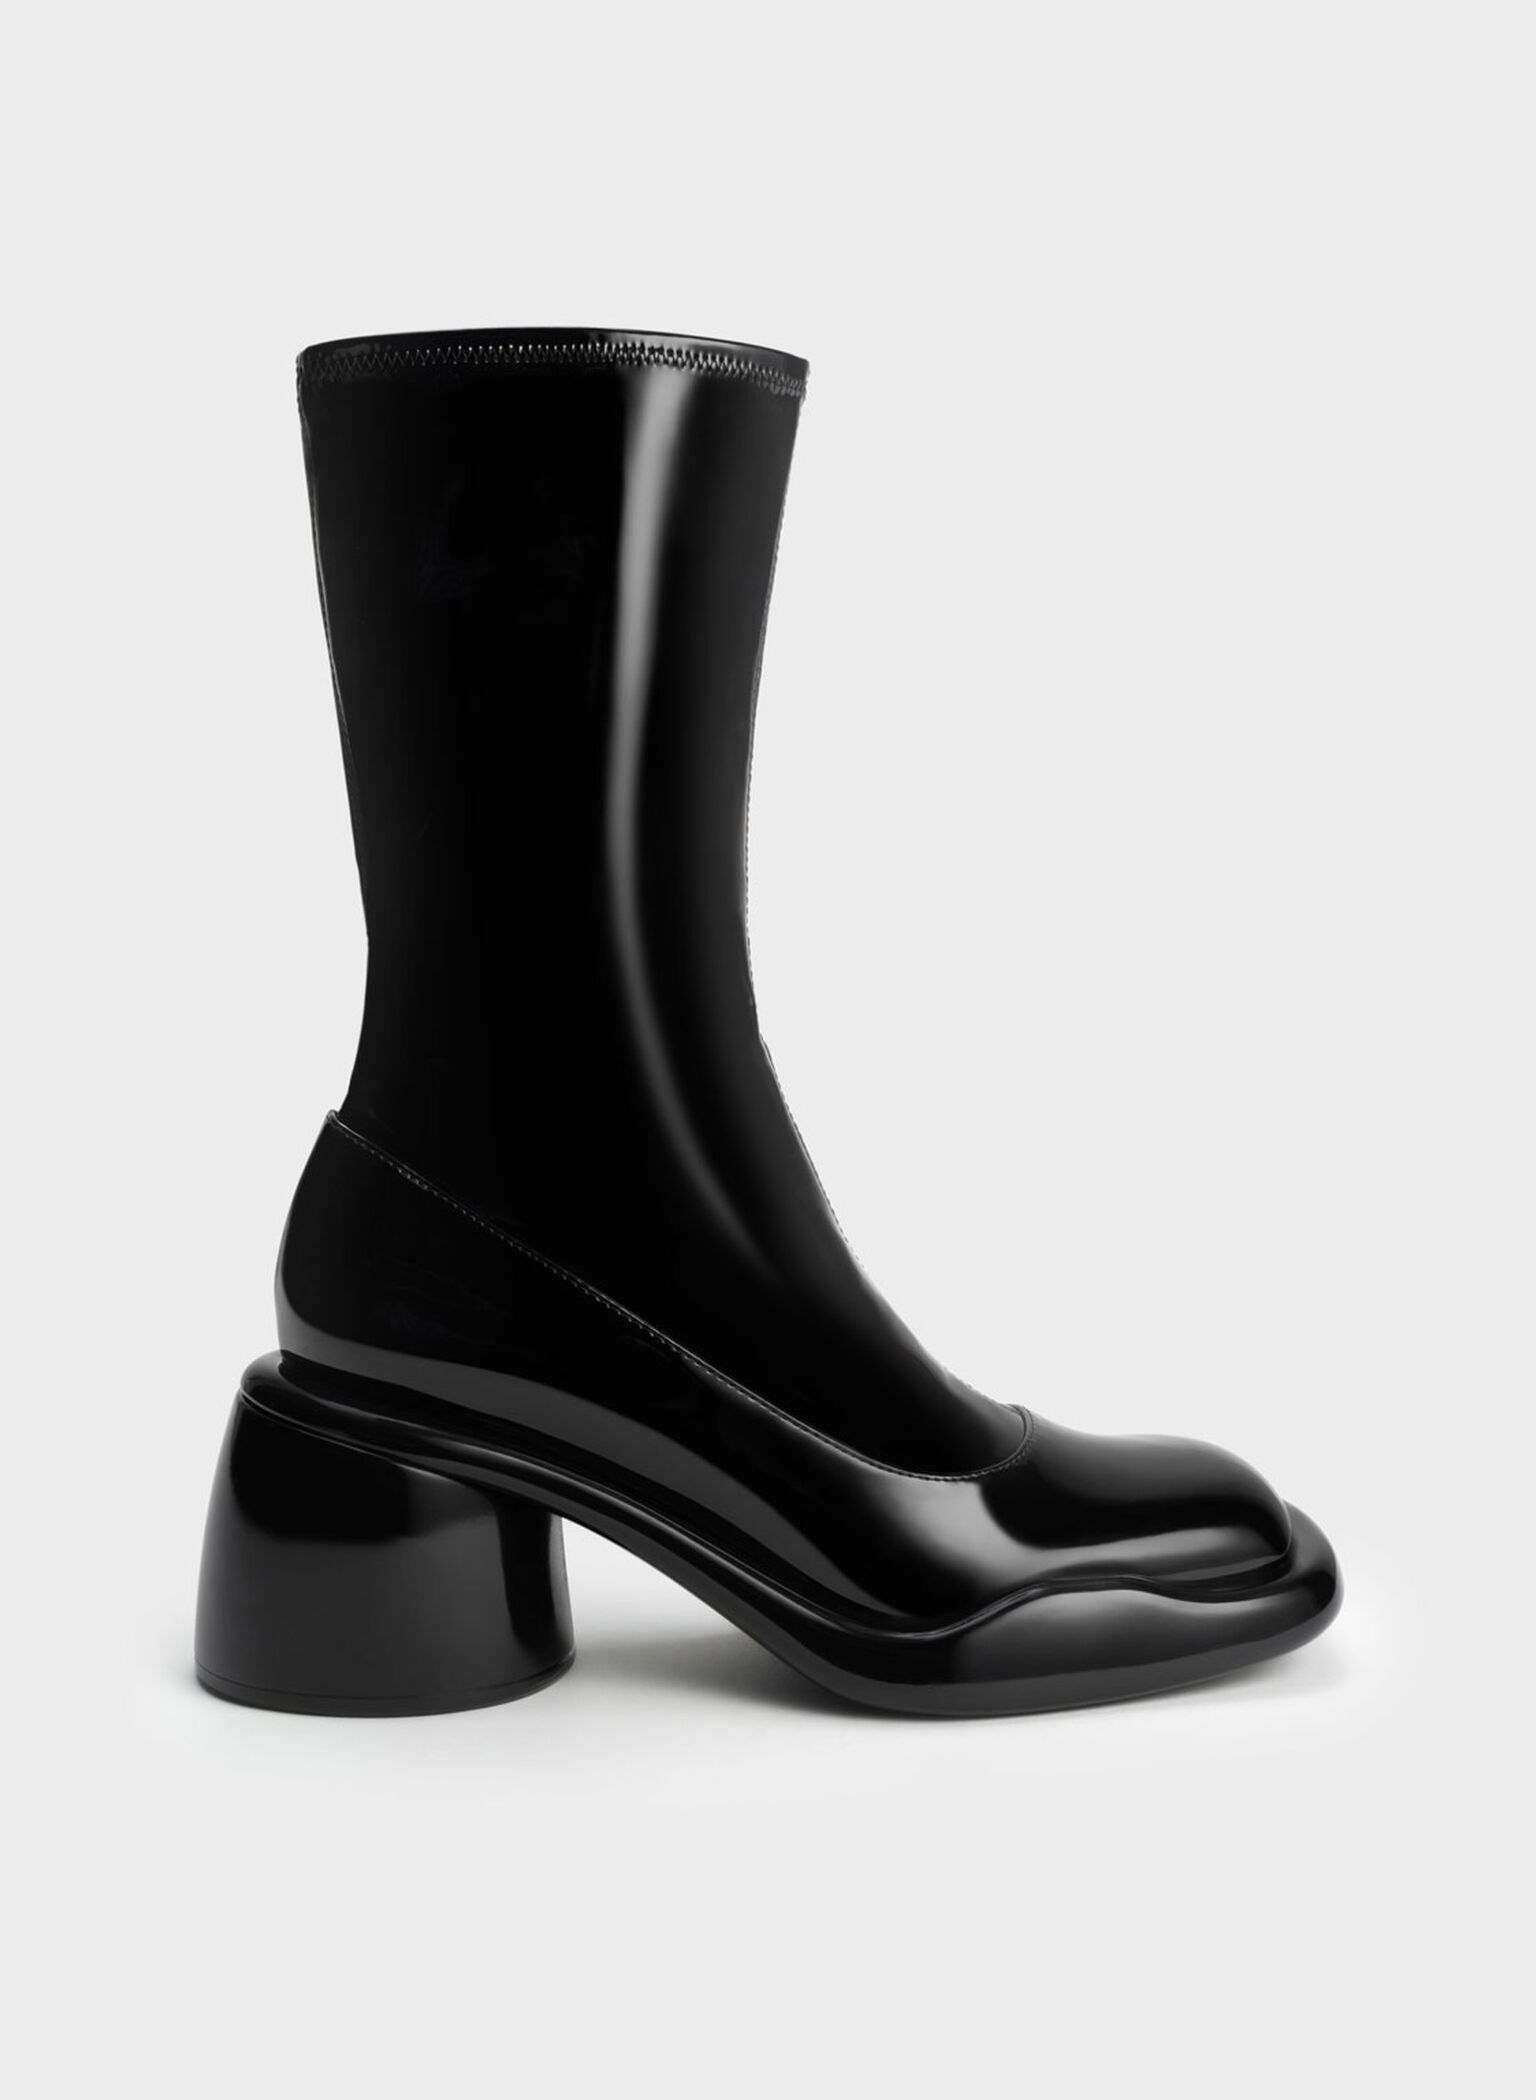 Lula Patent Chunky Heel Calf Boots, Black, hi-res